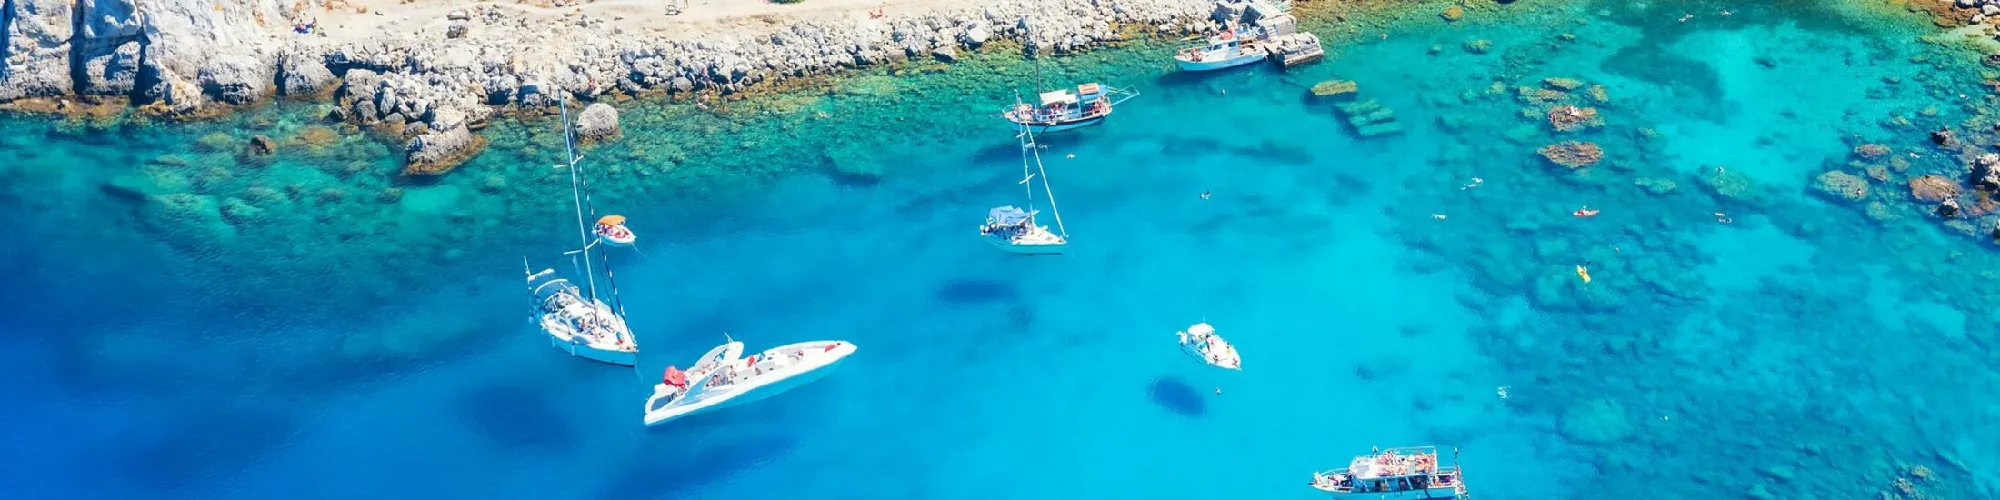 Zeit für Urlaub in Griechenland  background image